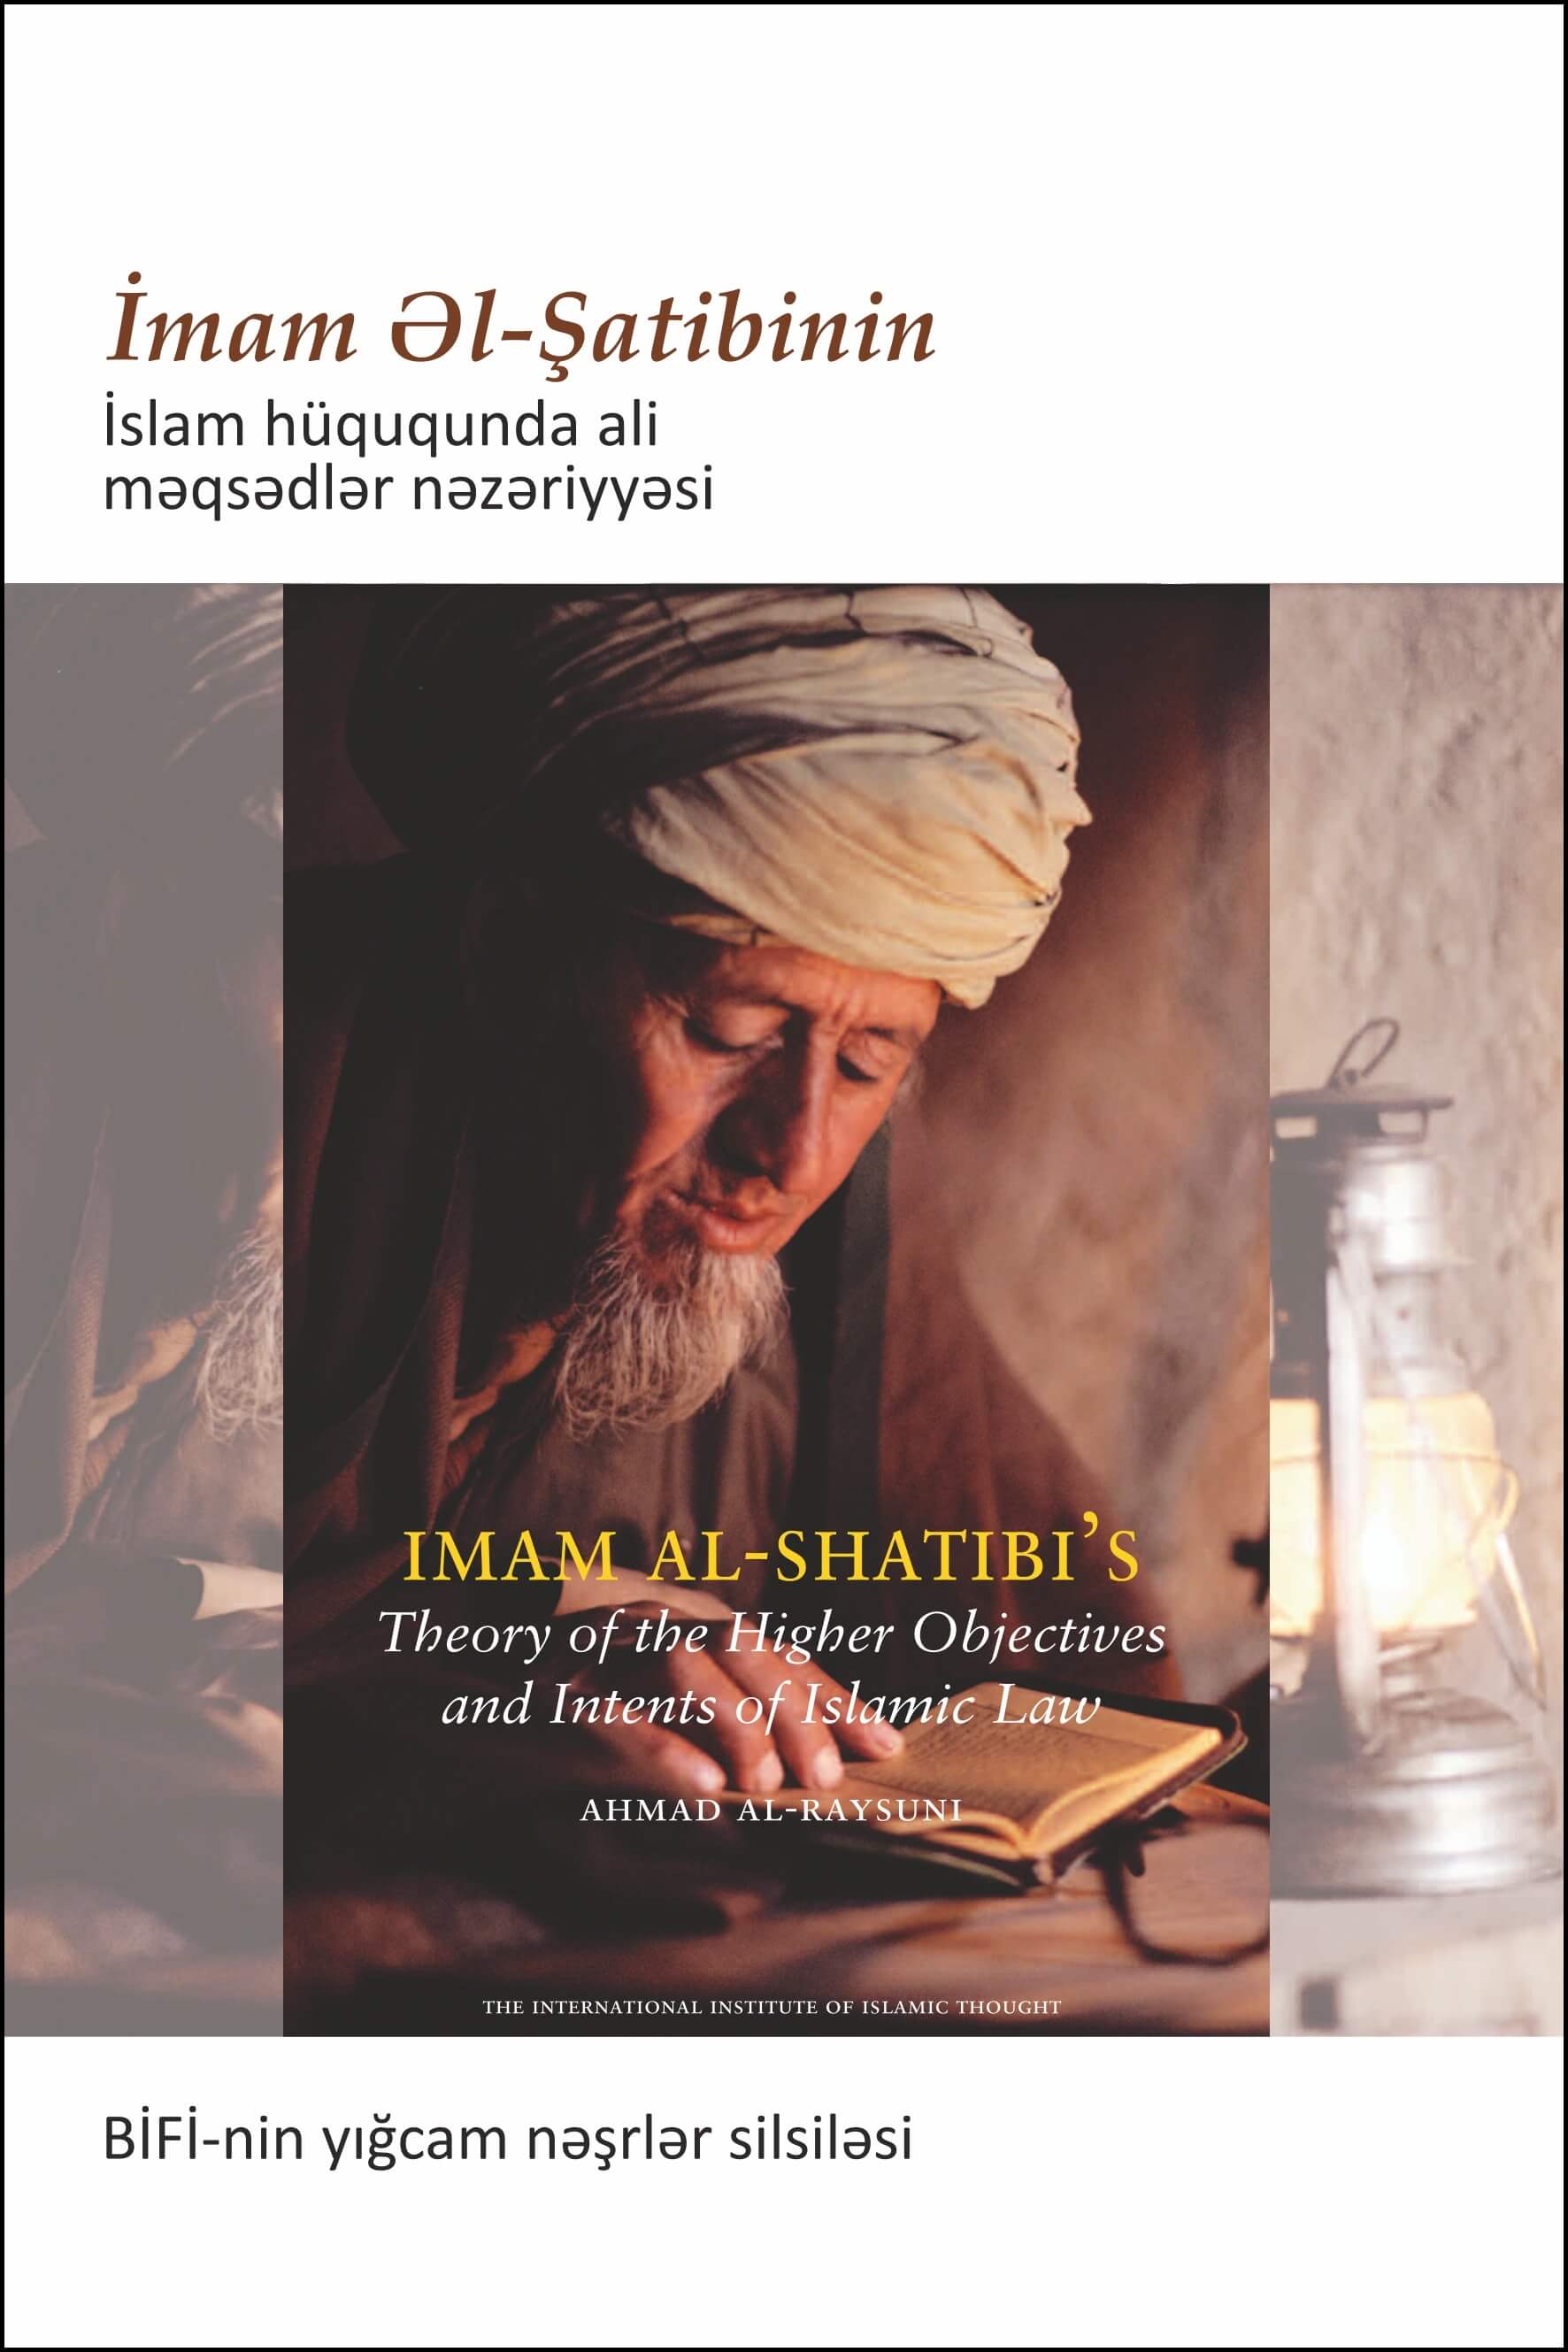 Azeri: BİFİ-nin yığcam nəşrlər silsiləsi: İmam Əl-Şatibinin İslam hüququnda ali məqsədlər nəzəriyyəsi (Book in Brief – Imam Al-Shatibi’s Theory of the Higher Objectives and Intents of Islamic Law)